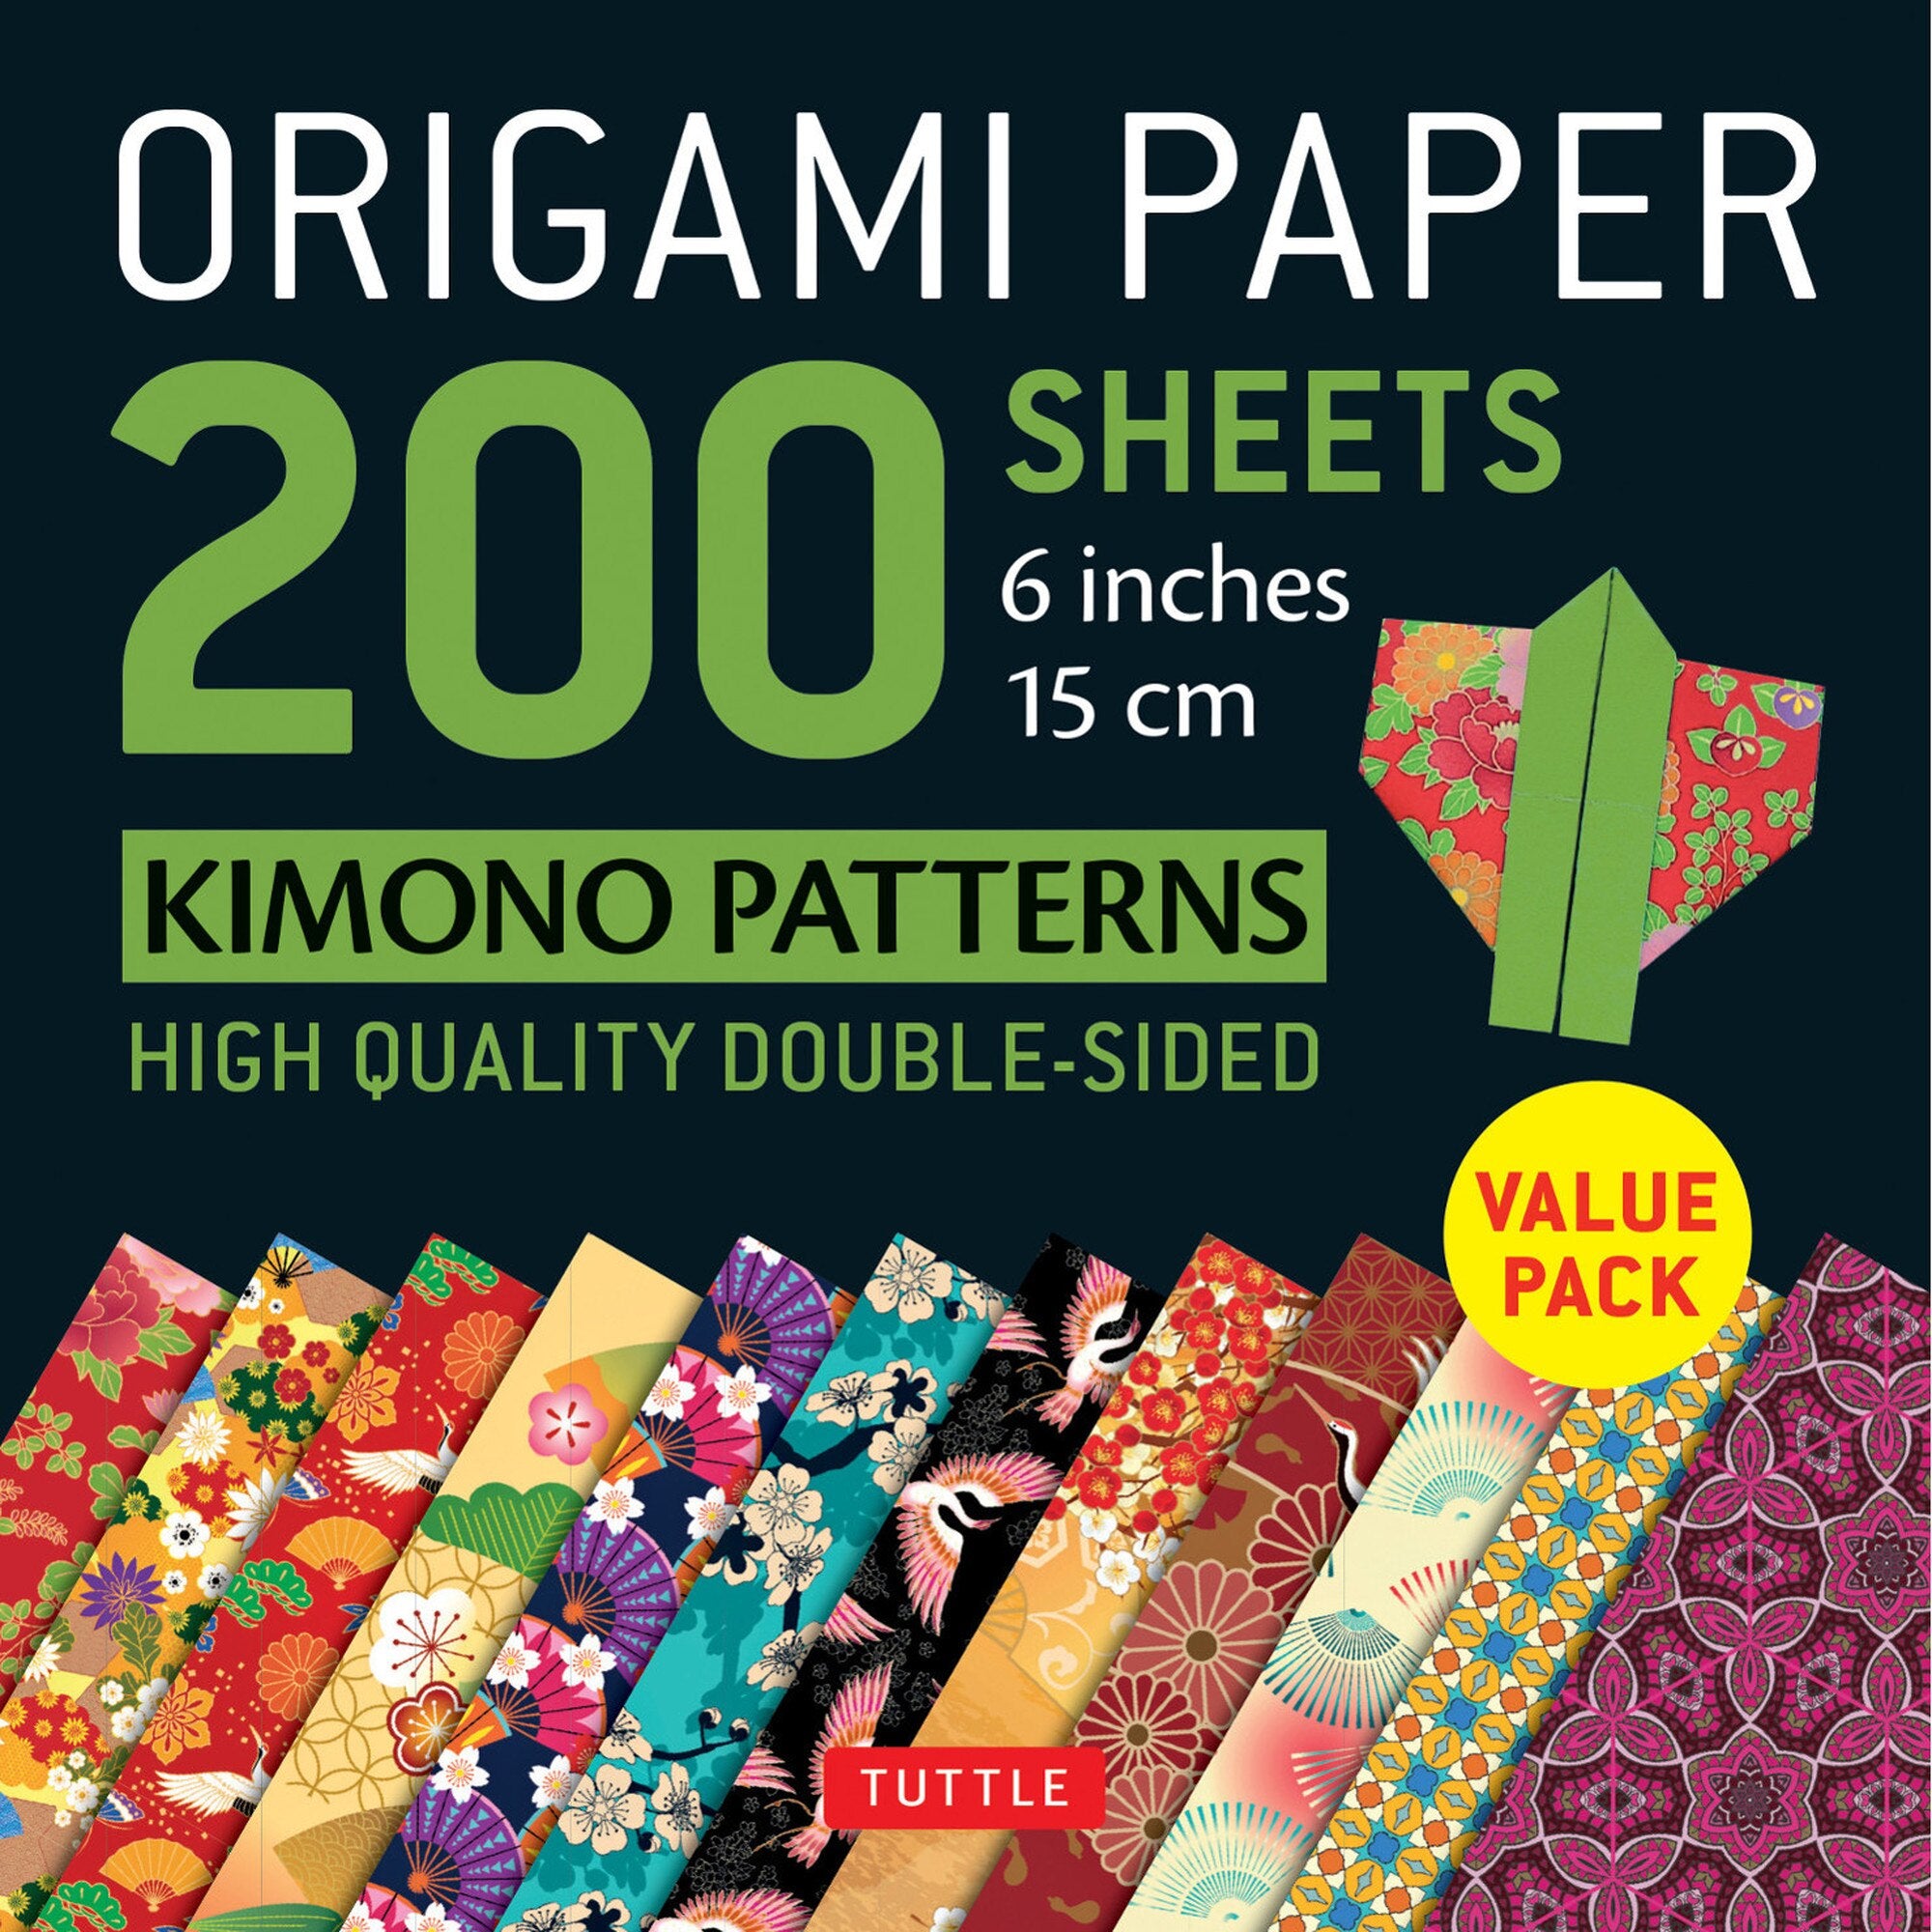 Red Single Color Premium Origami Paper